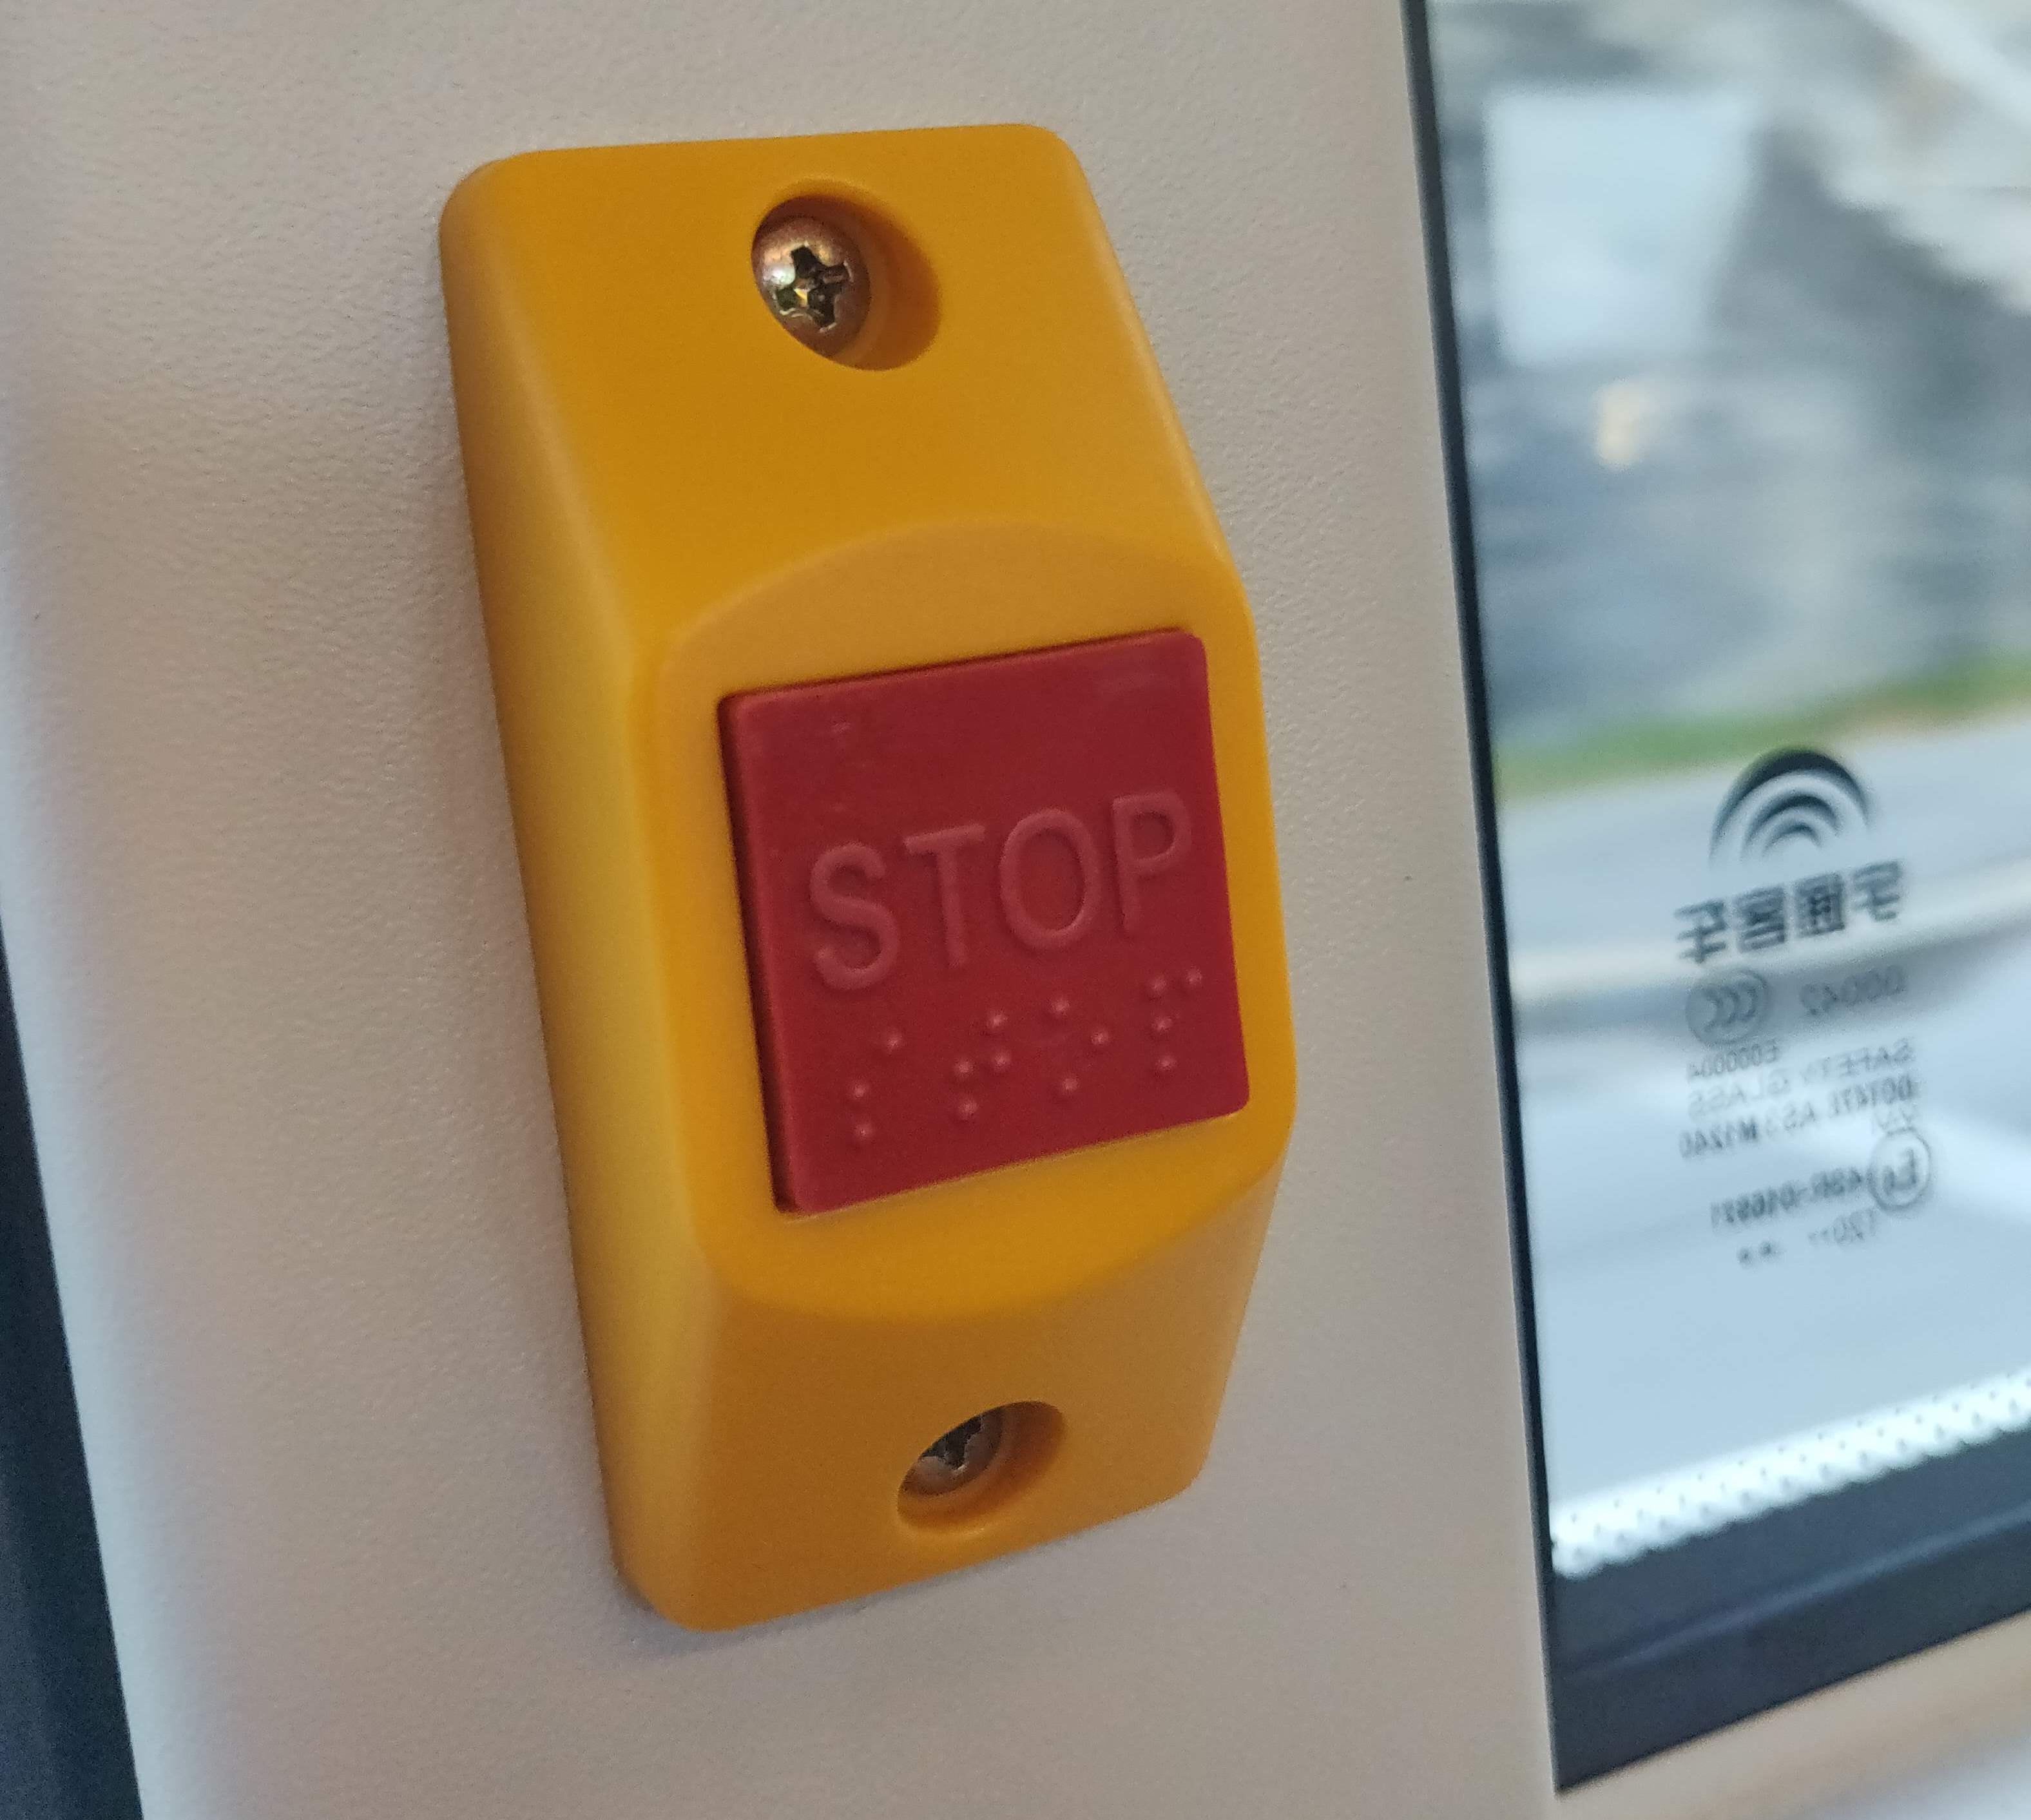 Bilde av en kjedelig knapp med teksten: STOP og punktskrift: STOP